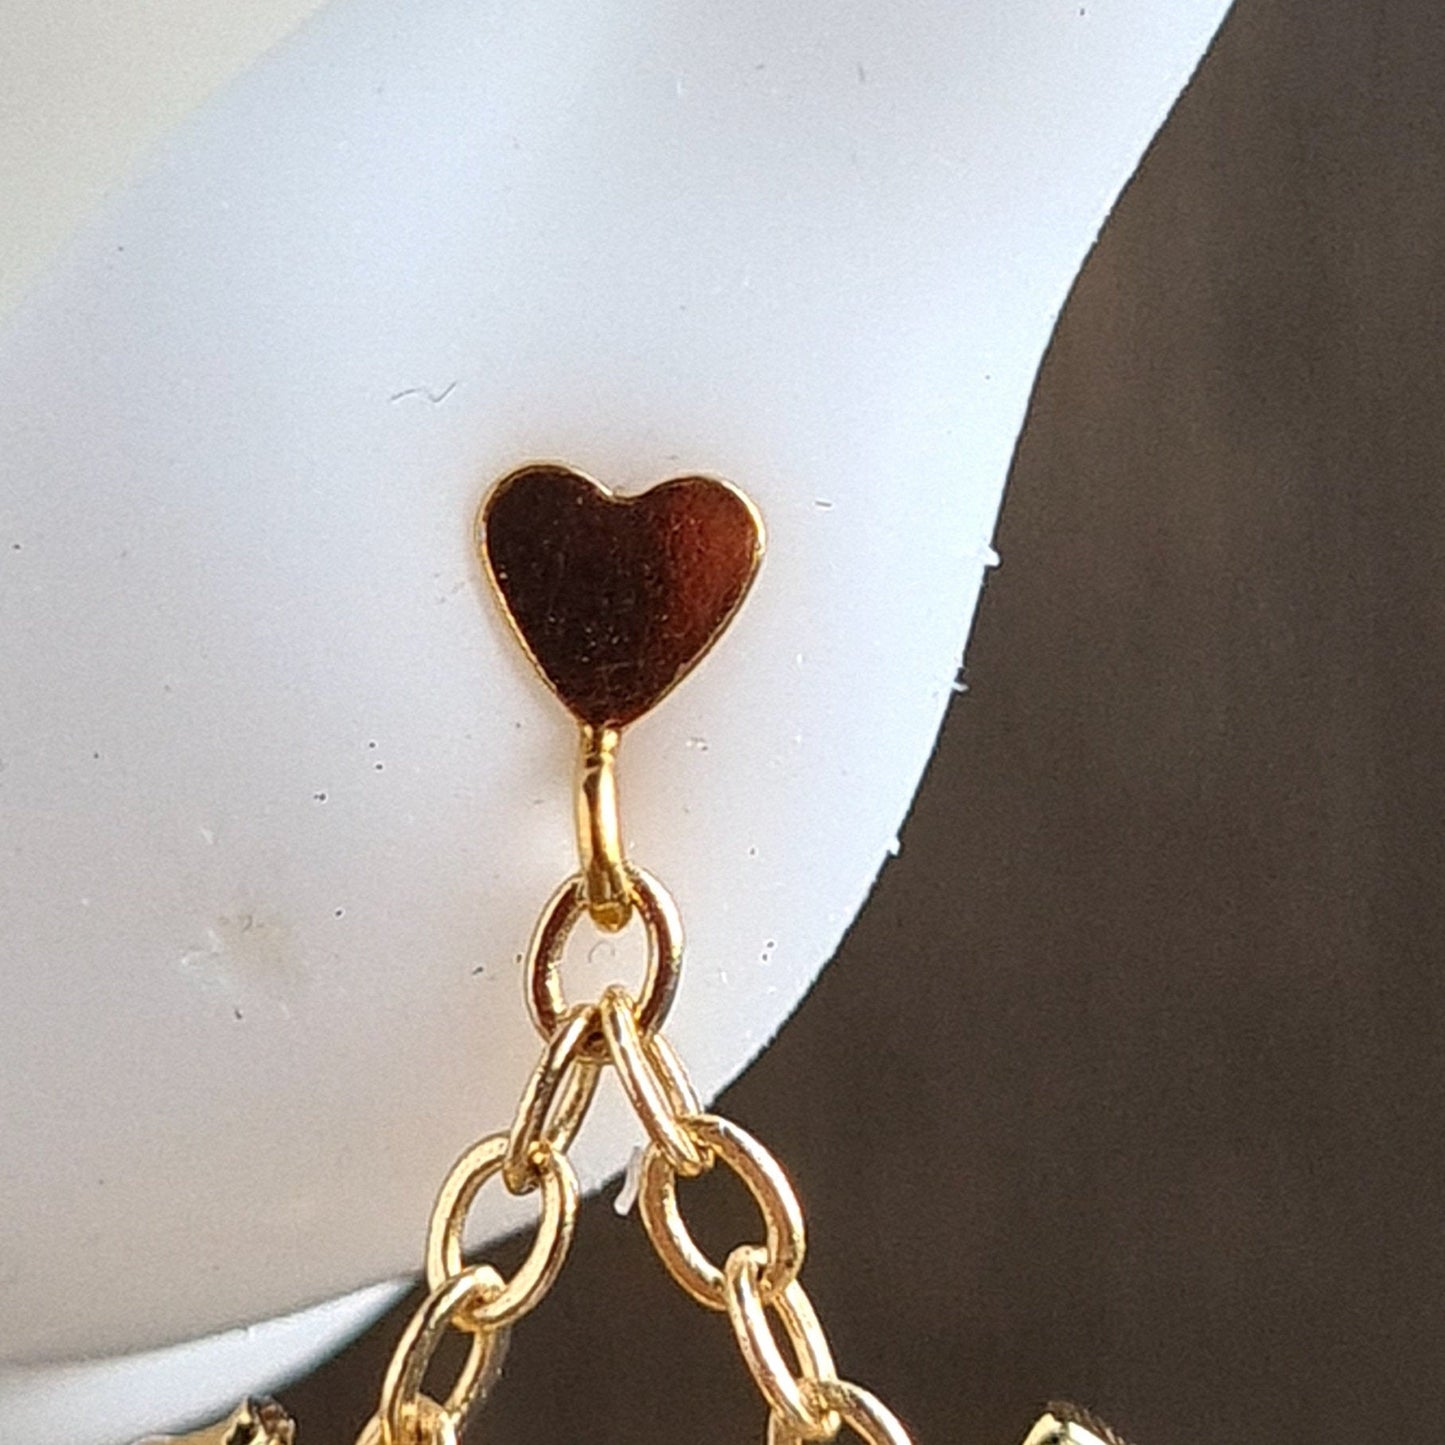 Triple Heart Gemstone Earrings  - Rose Chalcedony wirh heart shape stud